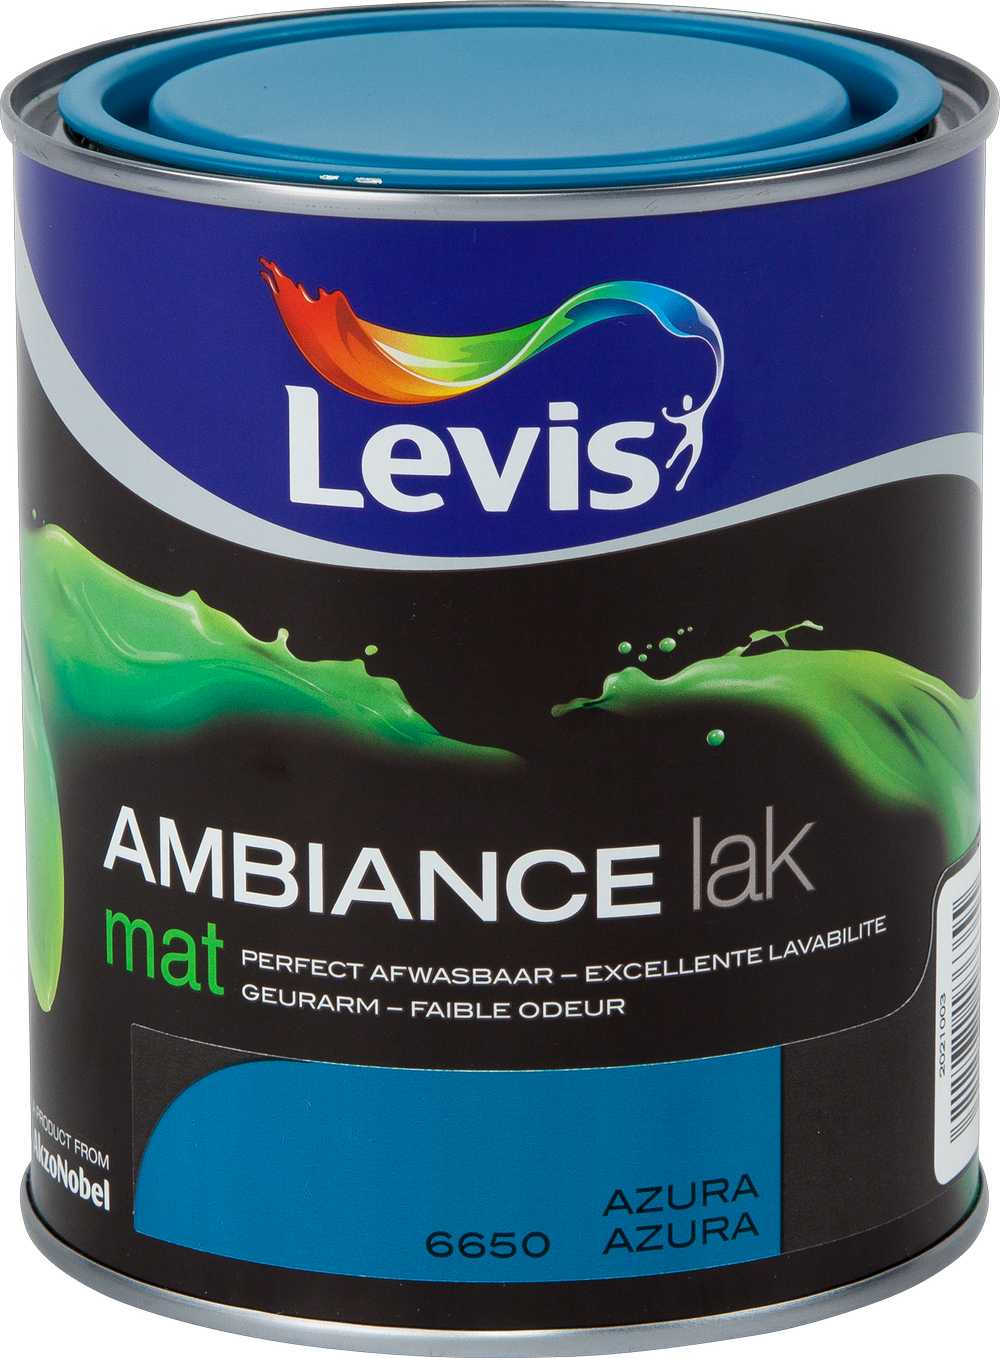 LV AMBIANCE LAK MAT 6650 750 ML